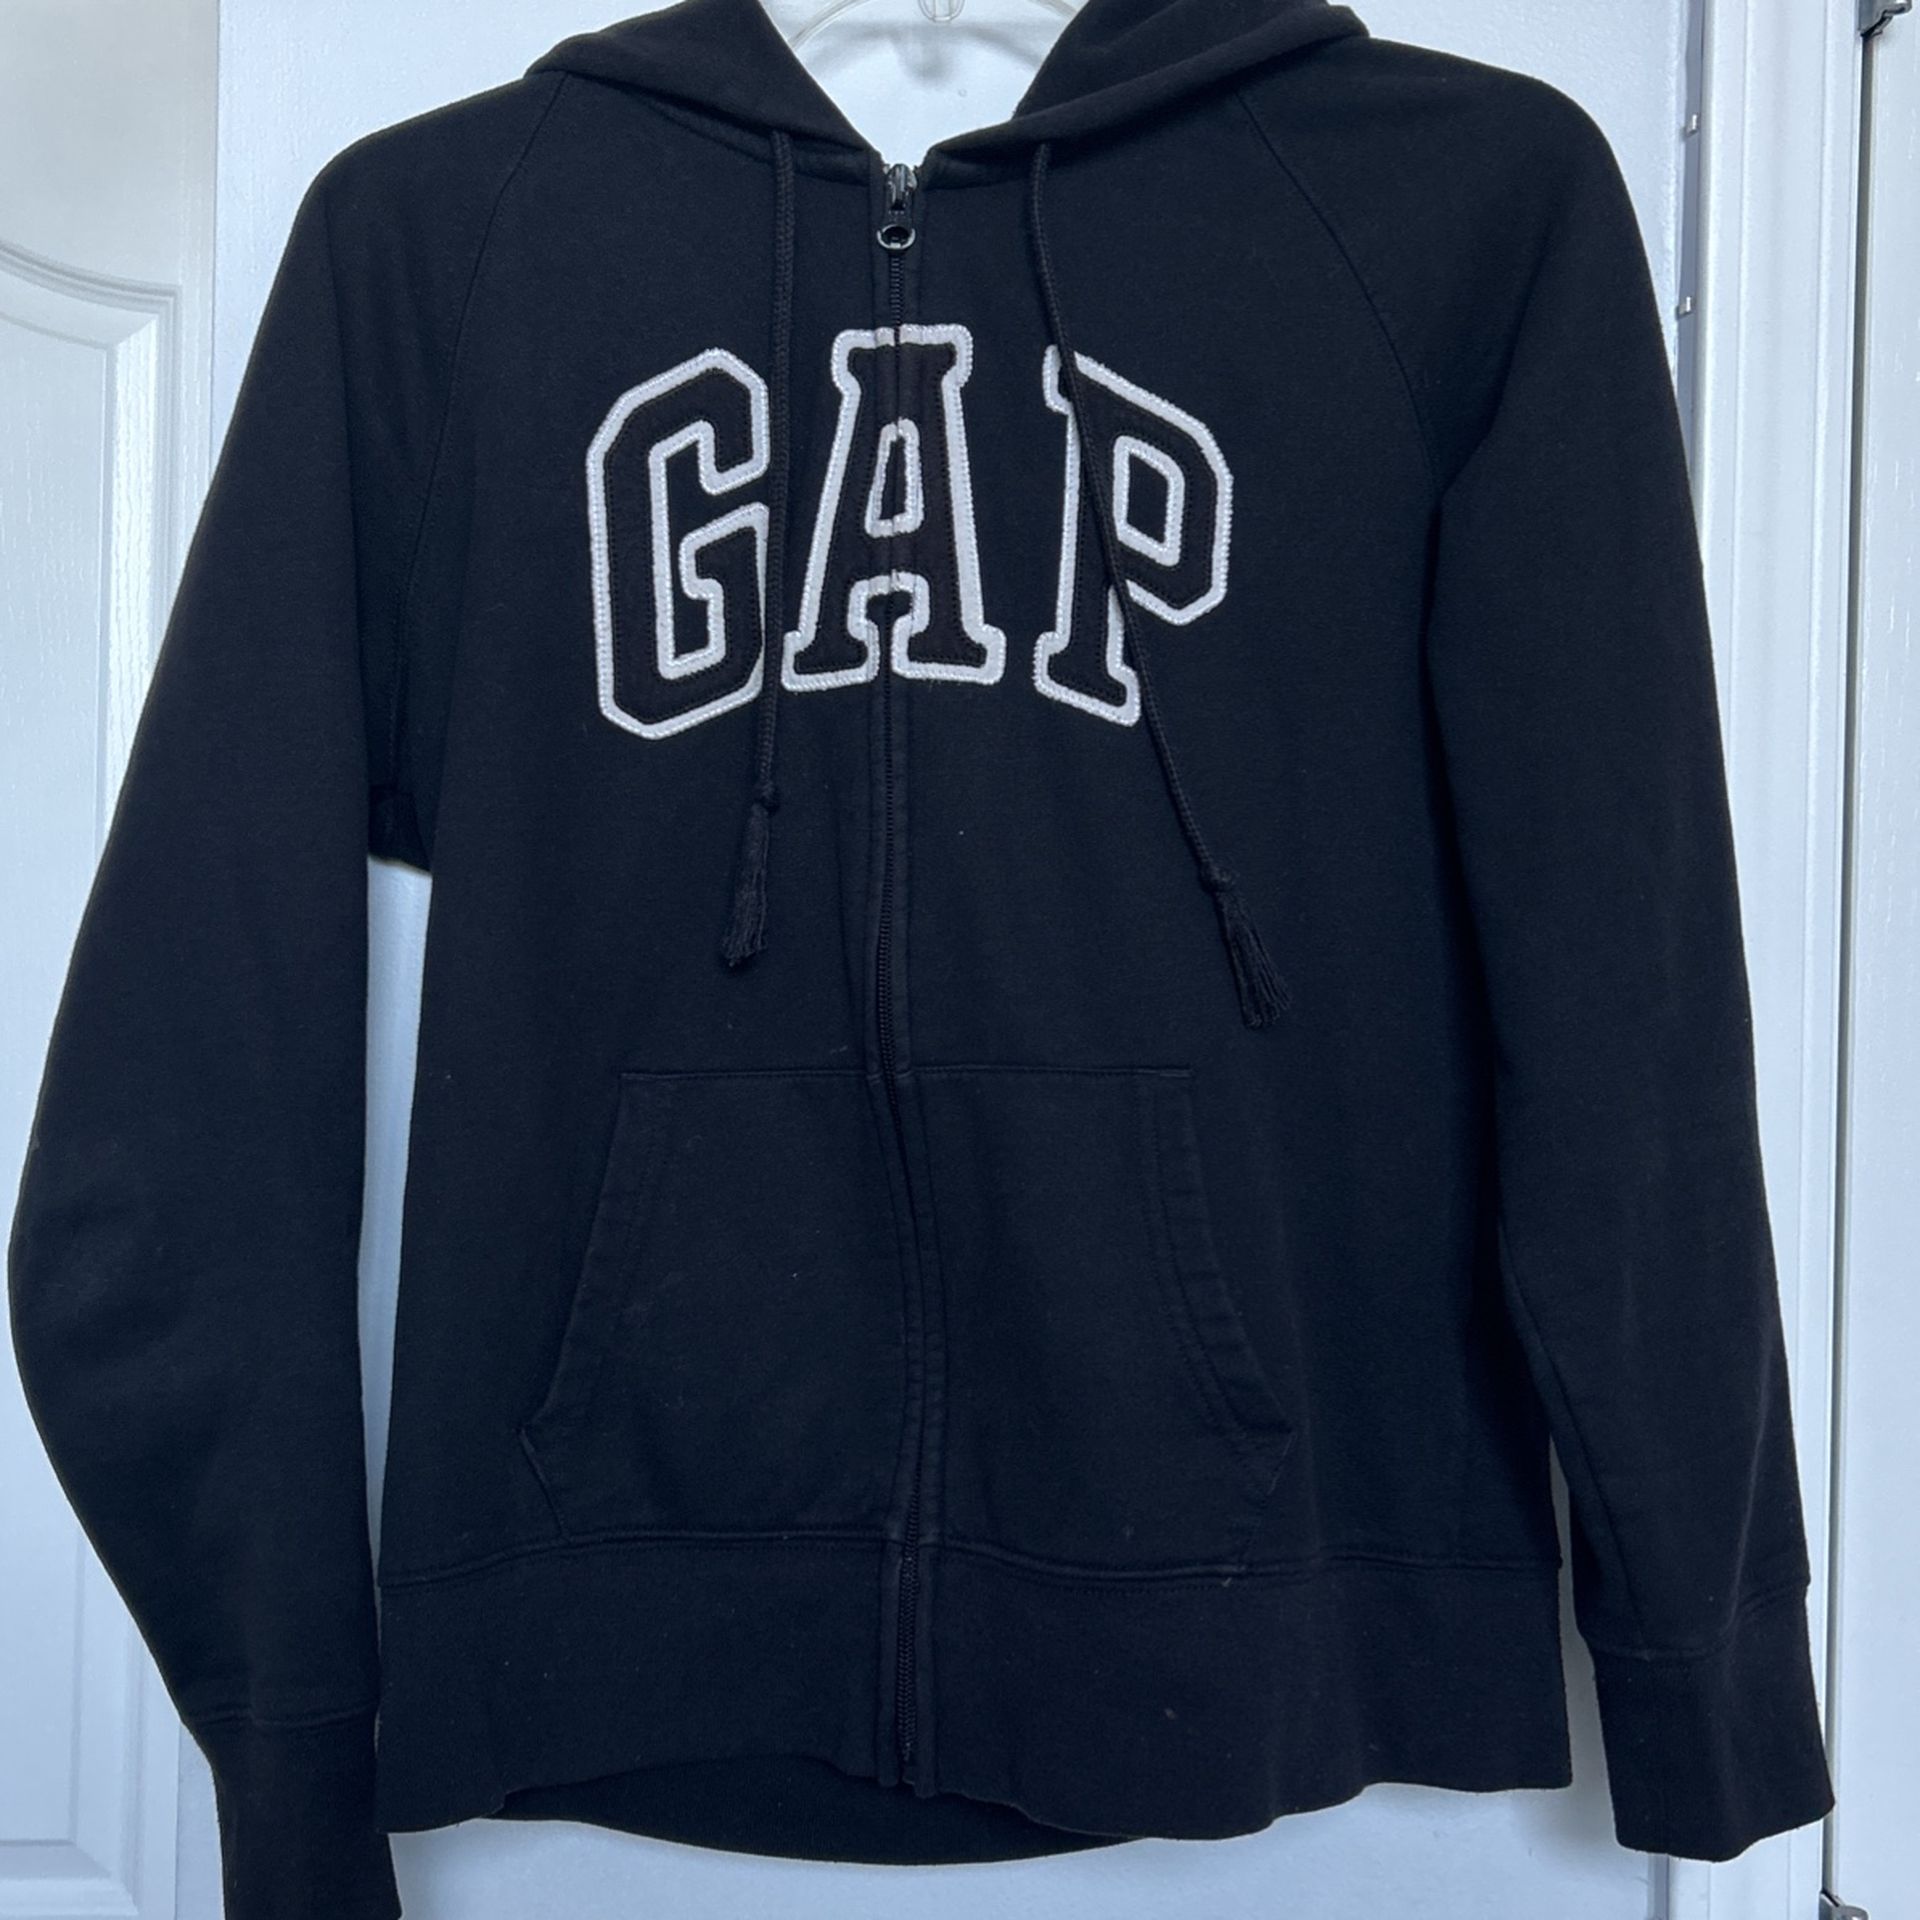 Gap Jacket